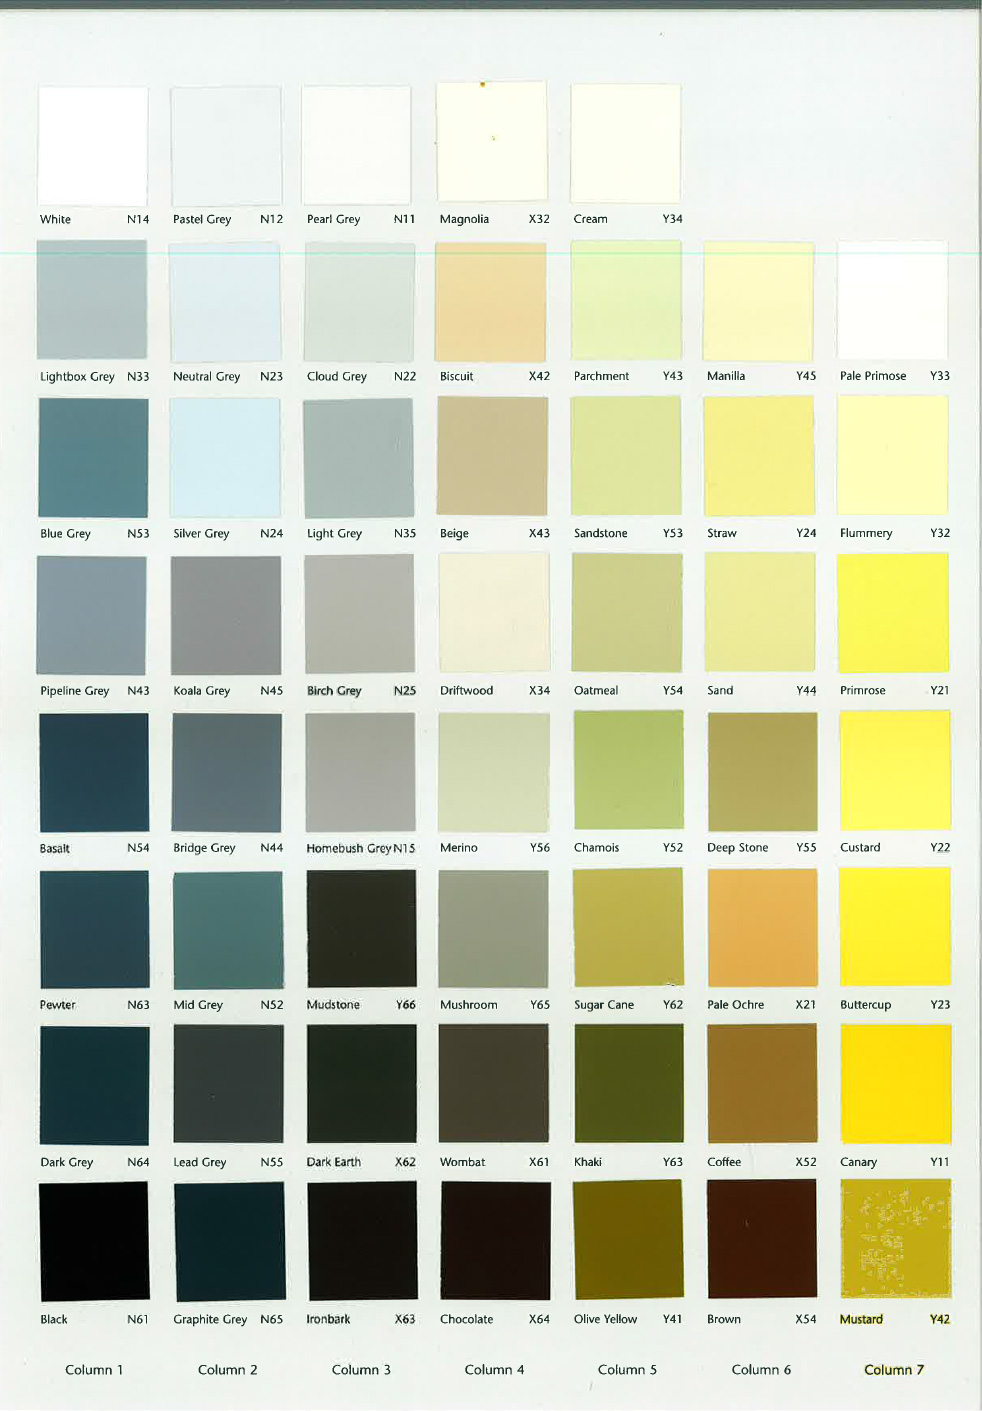 AS-2700-Colour-Chart